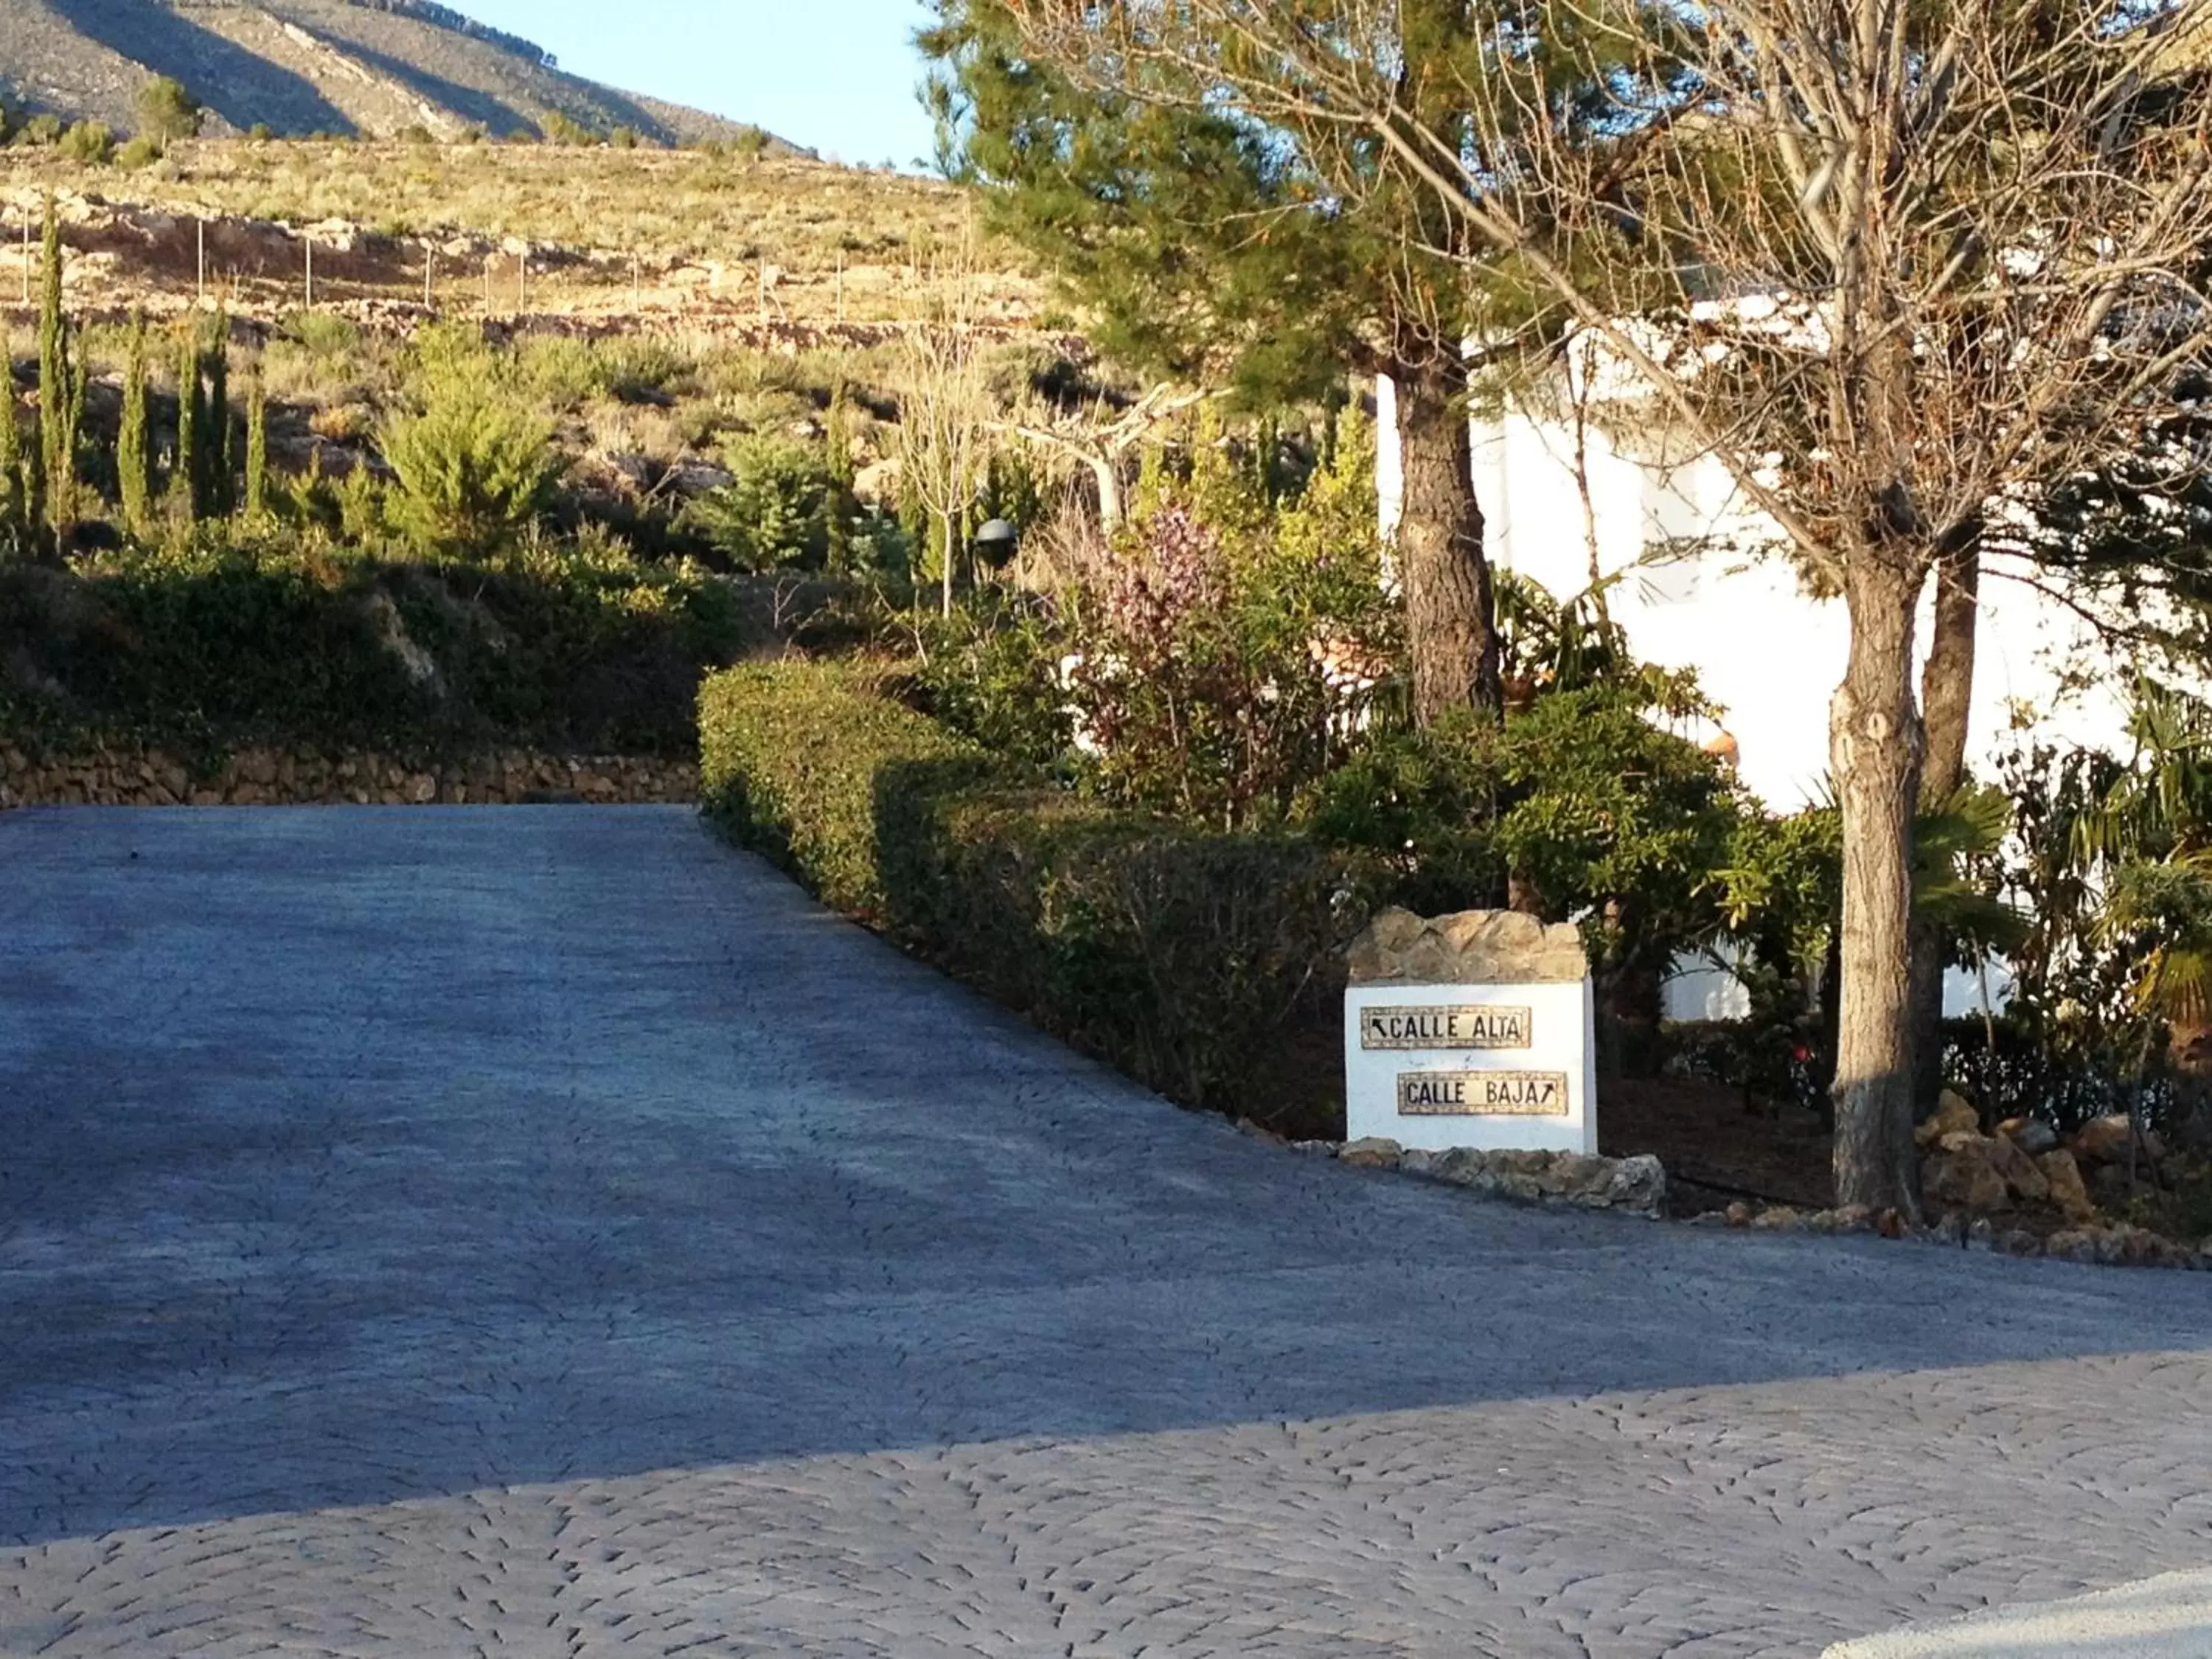 Property building, Facade/Entrance in Villa Turística de Laujar de Andarax